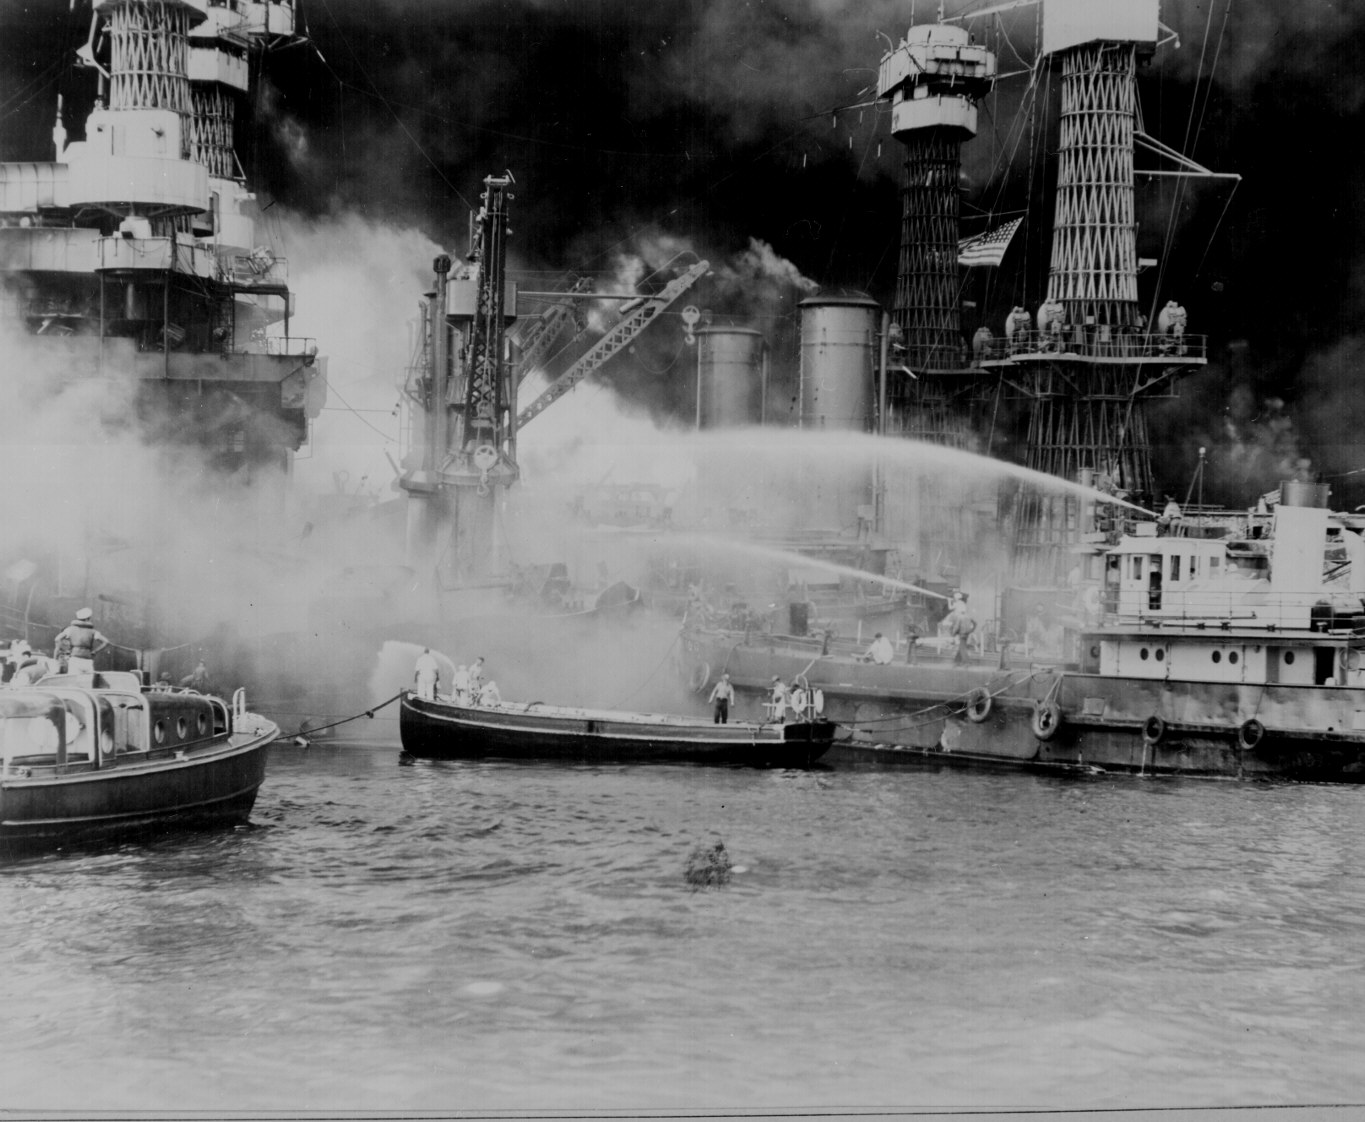 09 - USS WEST VIRGINIA aflame at Pearl Harbor.jpg